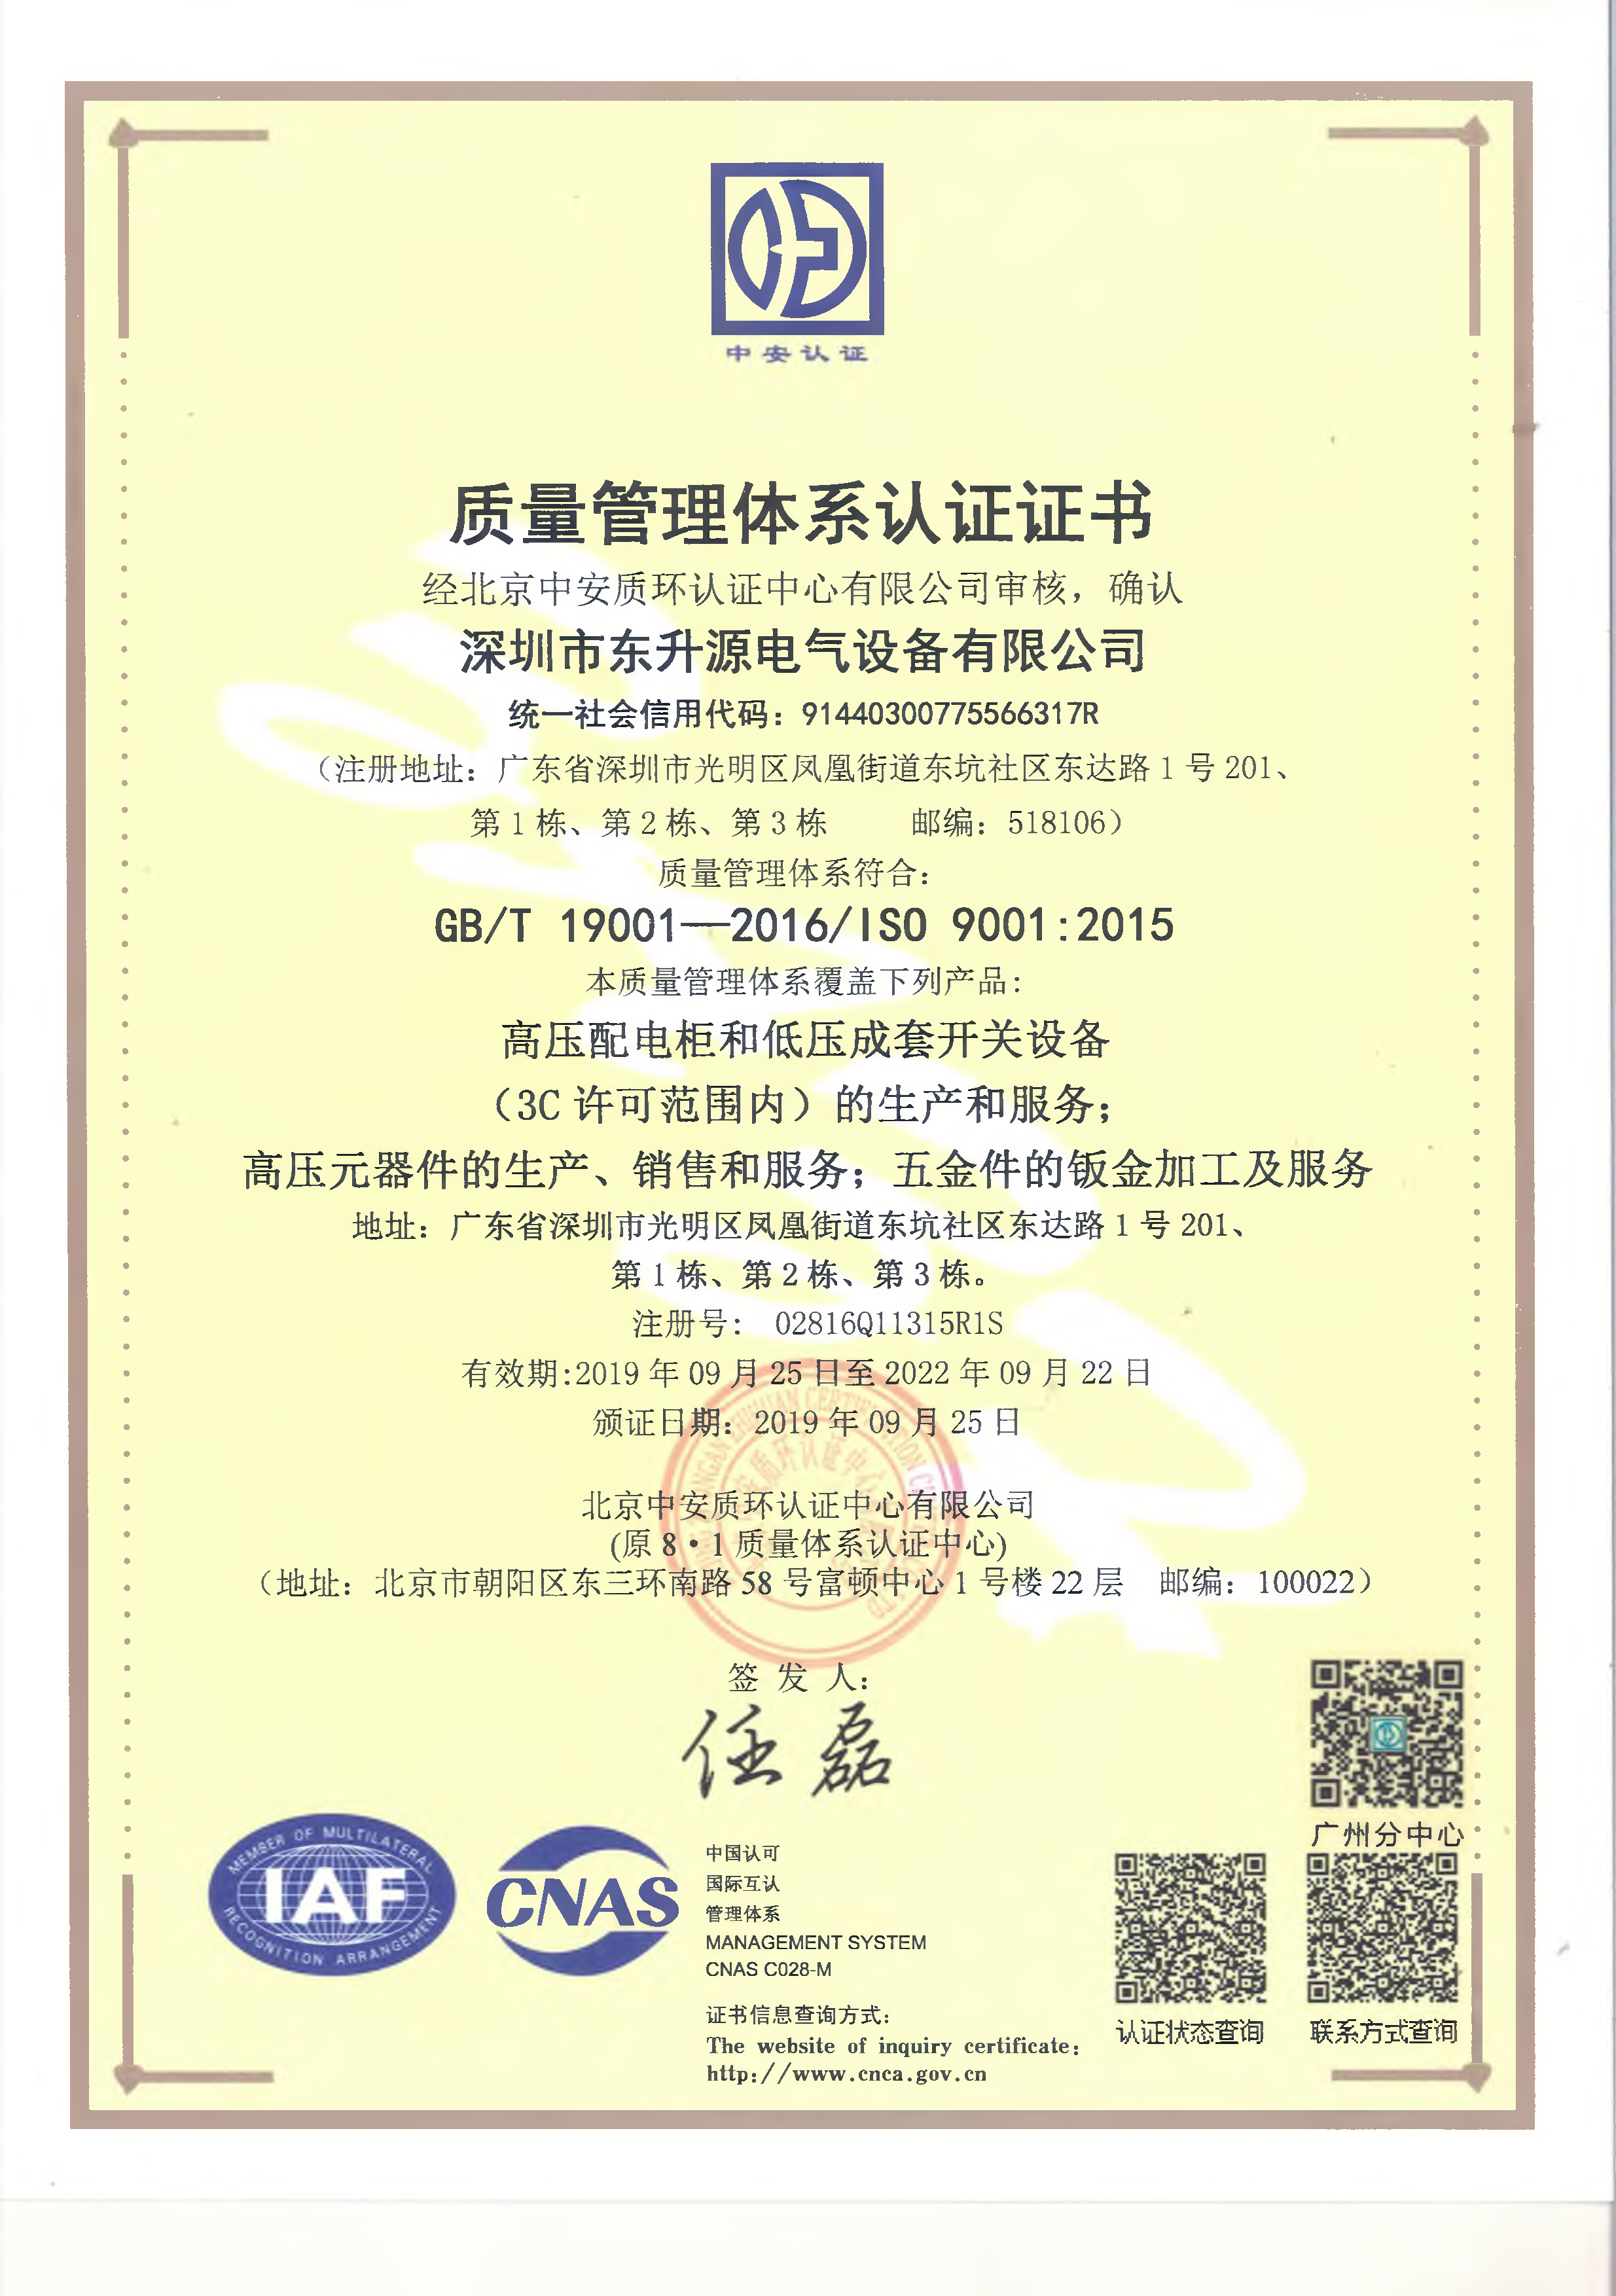 5、ISO质量管理体系认证证书